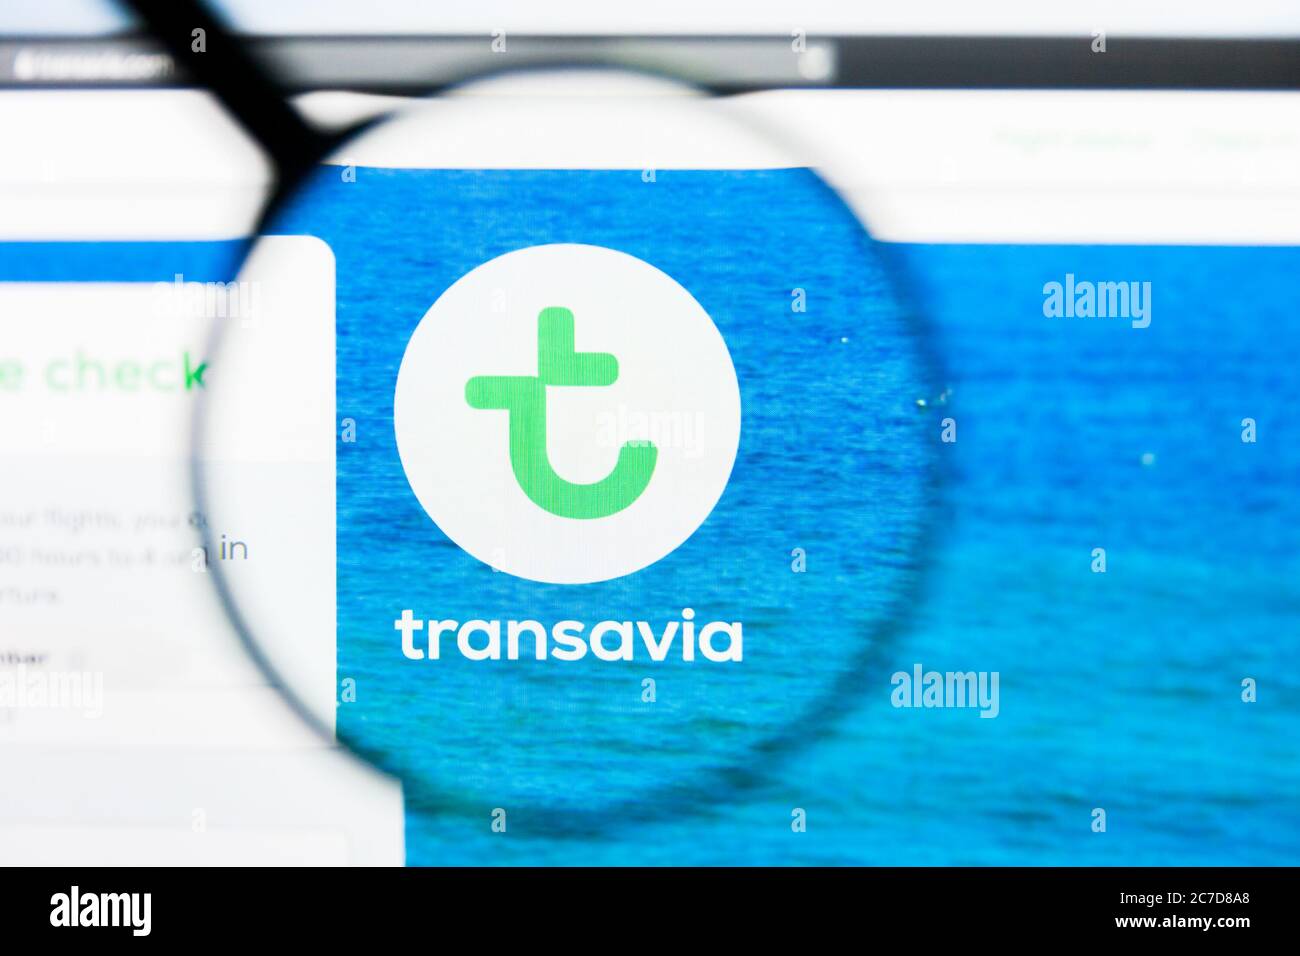 Los Angeles, California, USA - 21 Marzo 2019: Editoriale illustrativo della homepage del sito Transavia Airlines. Logo Transavia Airlines visibile su Foto Stock